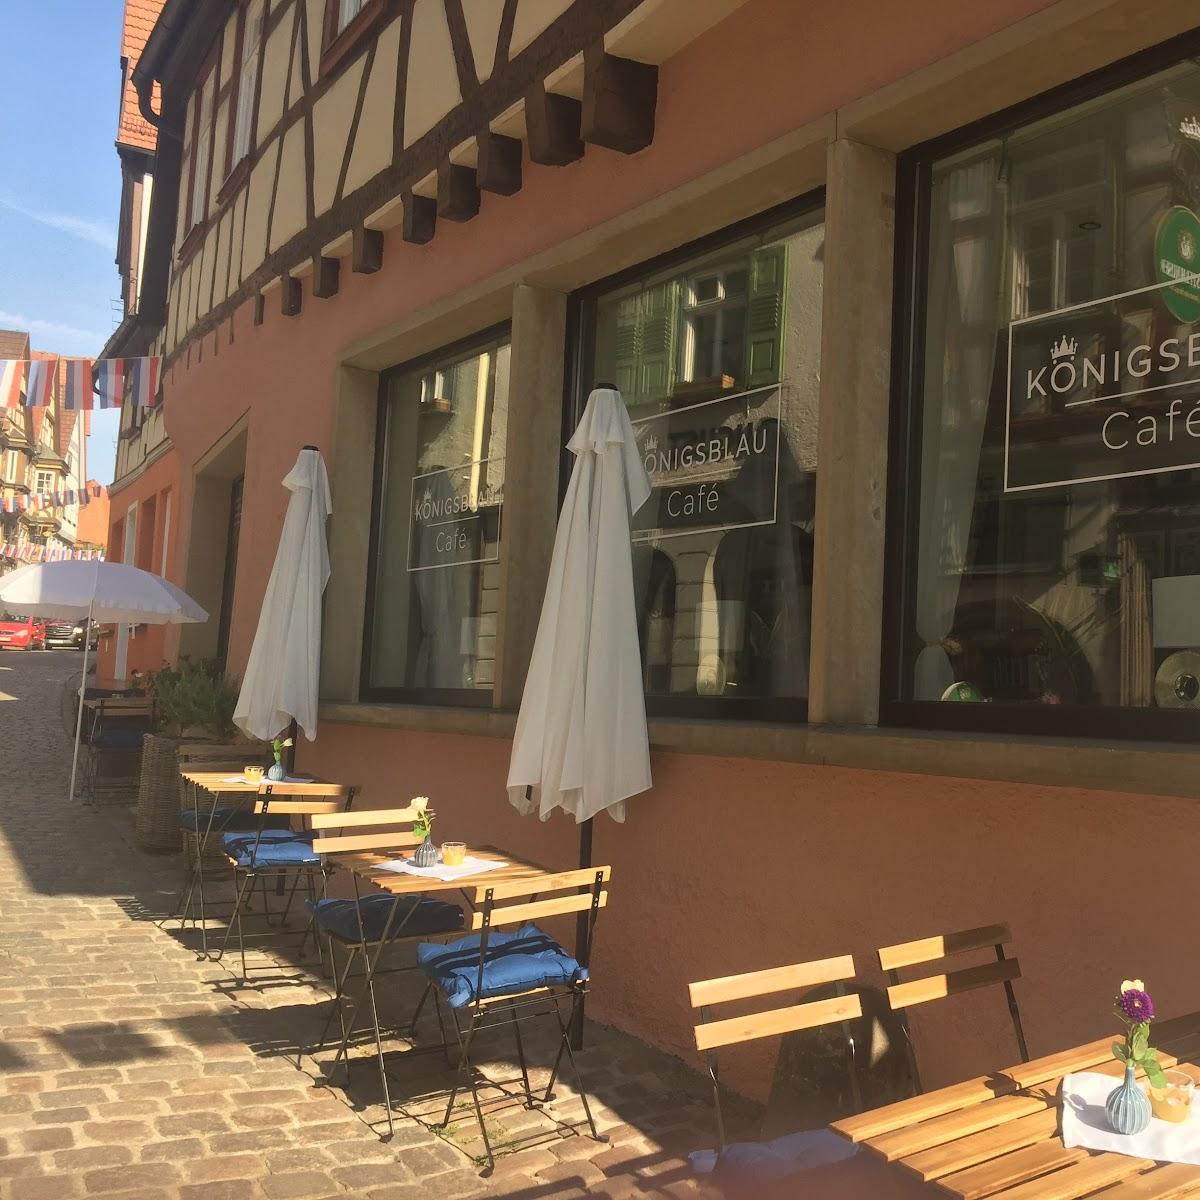 Restaurant "KÖNIGSBLAU Café" in Bad Wimpfen